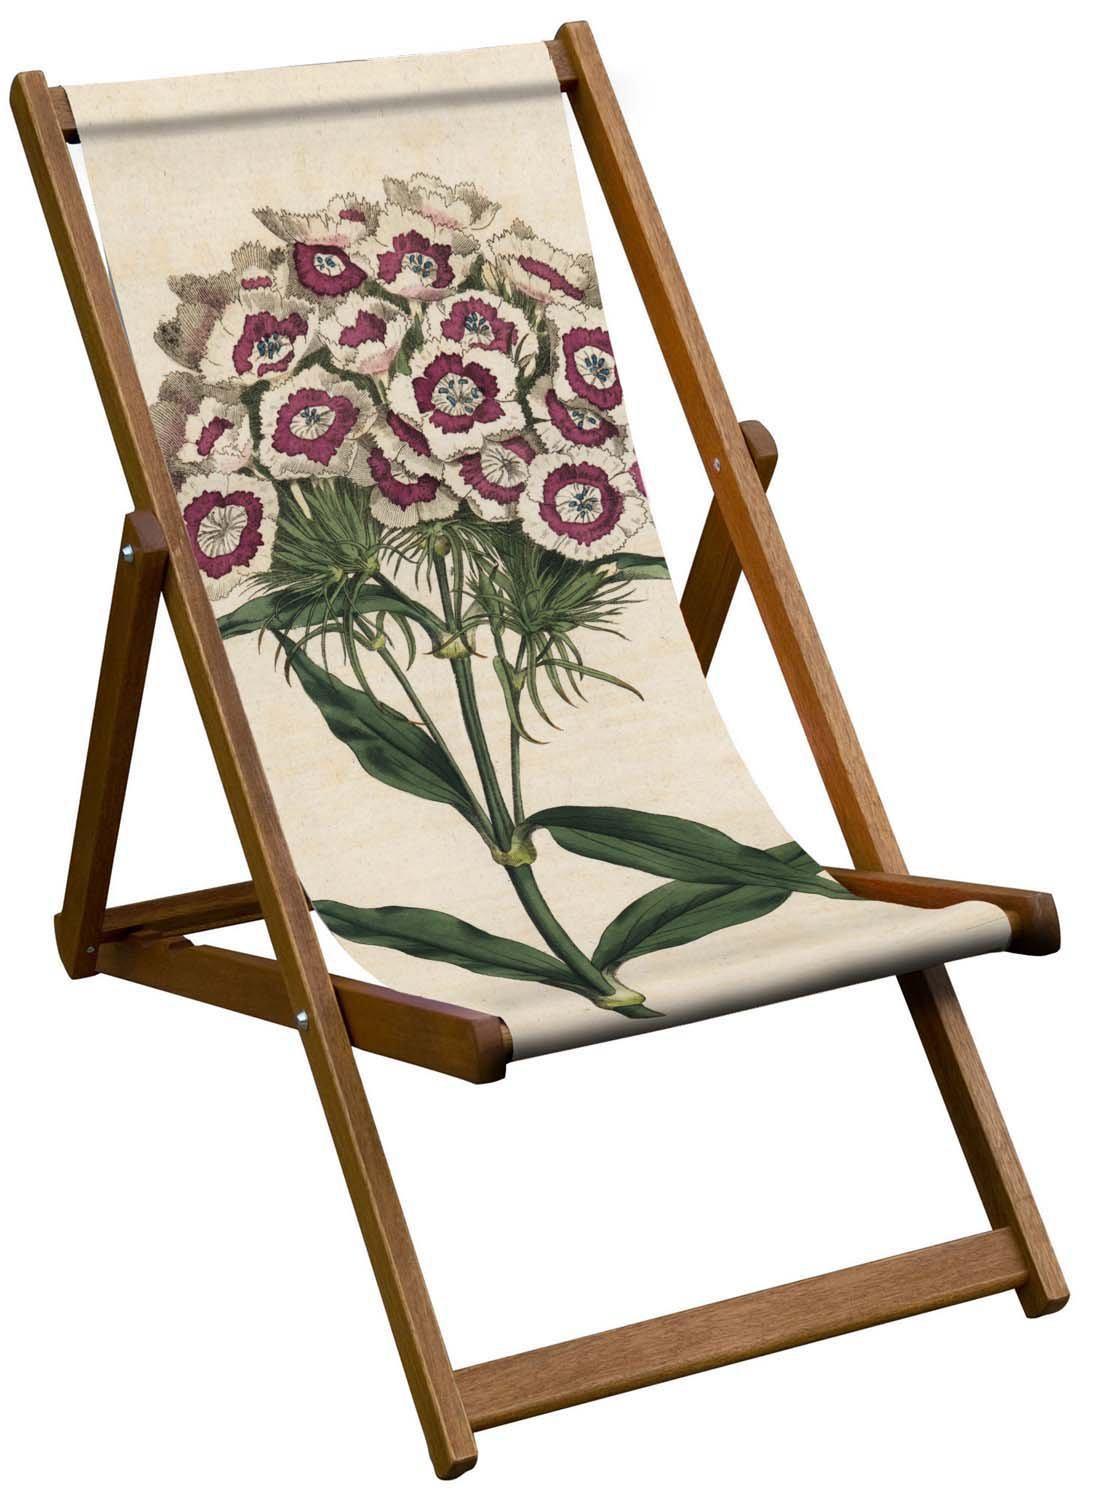 Sweet William - Dianthus Barbatus - Botanical Designs Deckchair